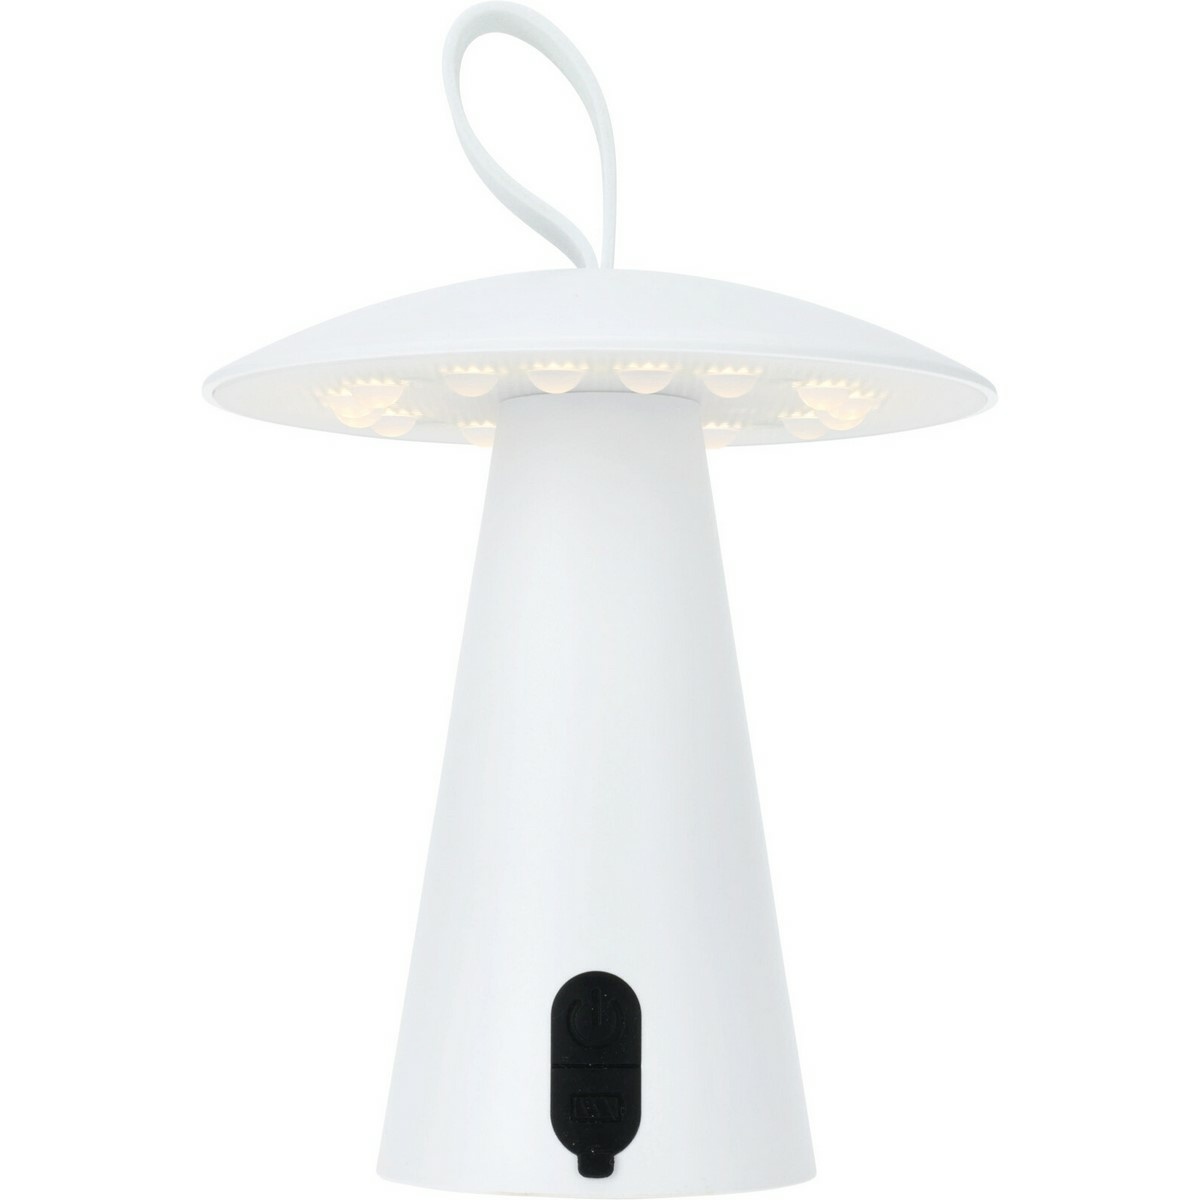 Fotografie Stolní venkovní přenosná LED lampa Boise, bílá, USB, 15 x 17 cm, plast